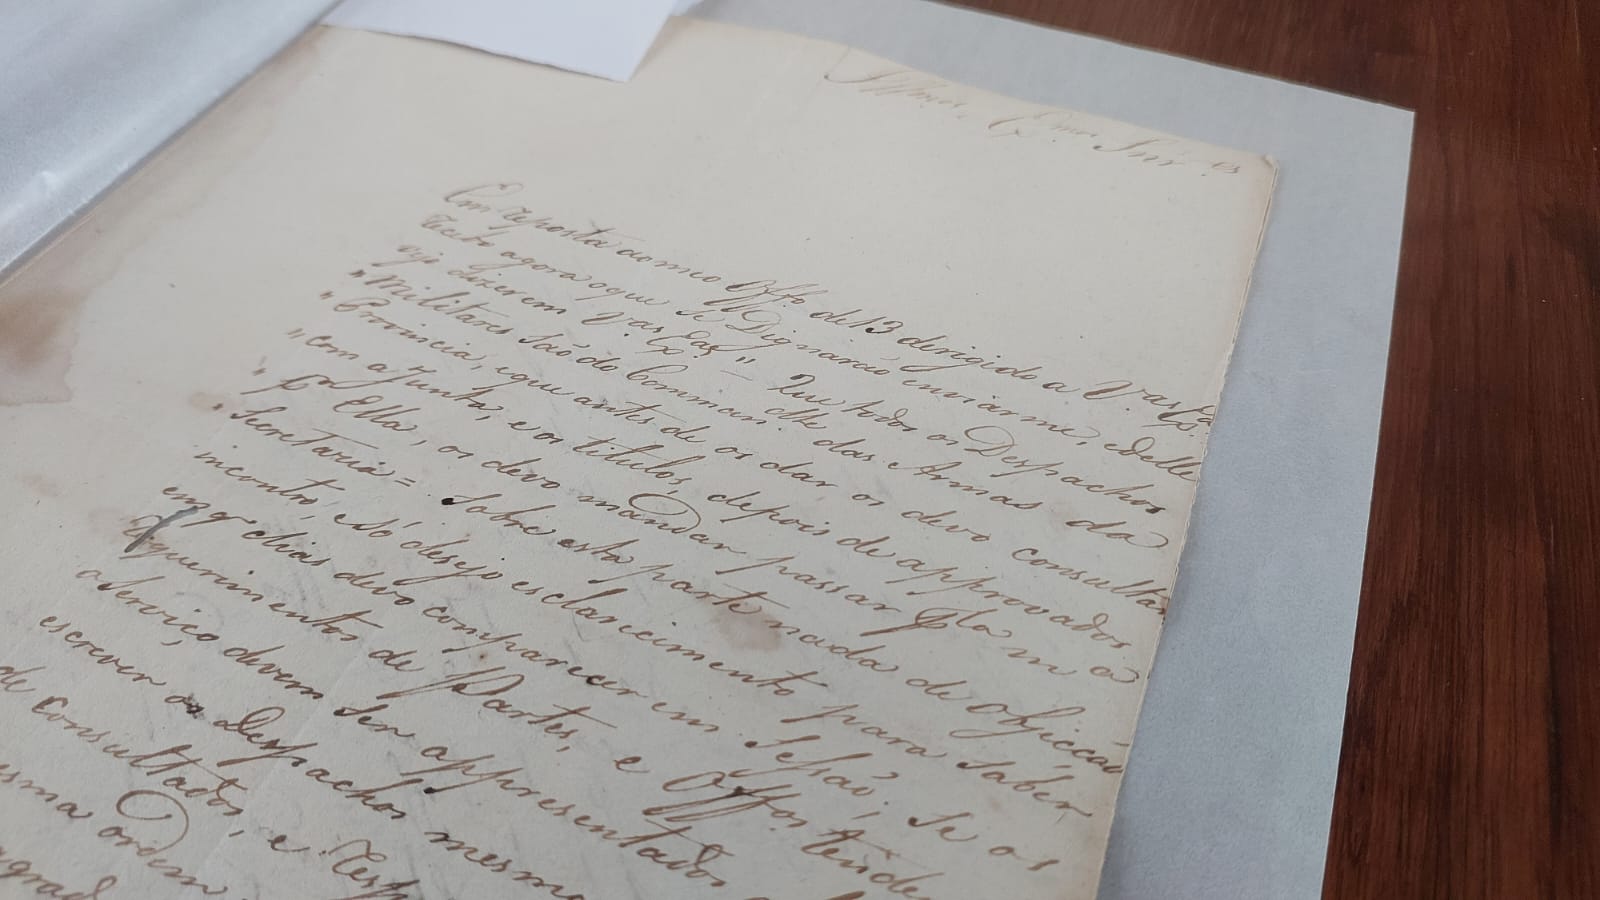 Correspondências históricas datada de 1823 arquivada no Arquivo Público de Sergipe